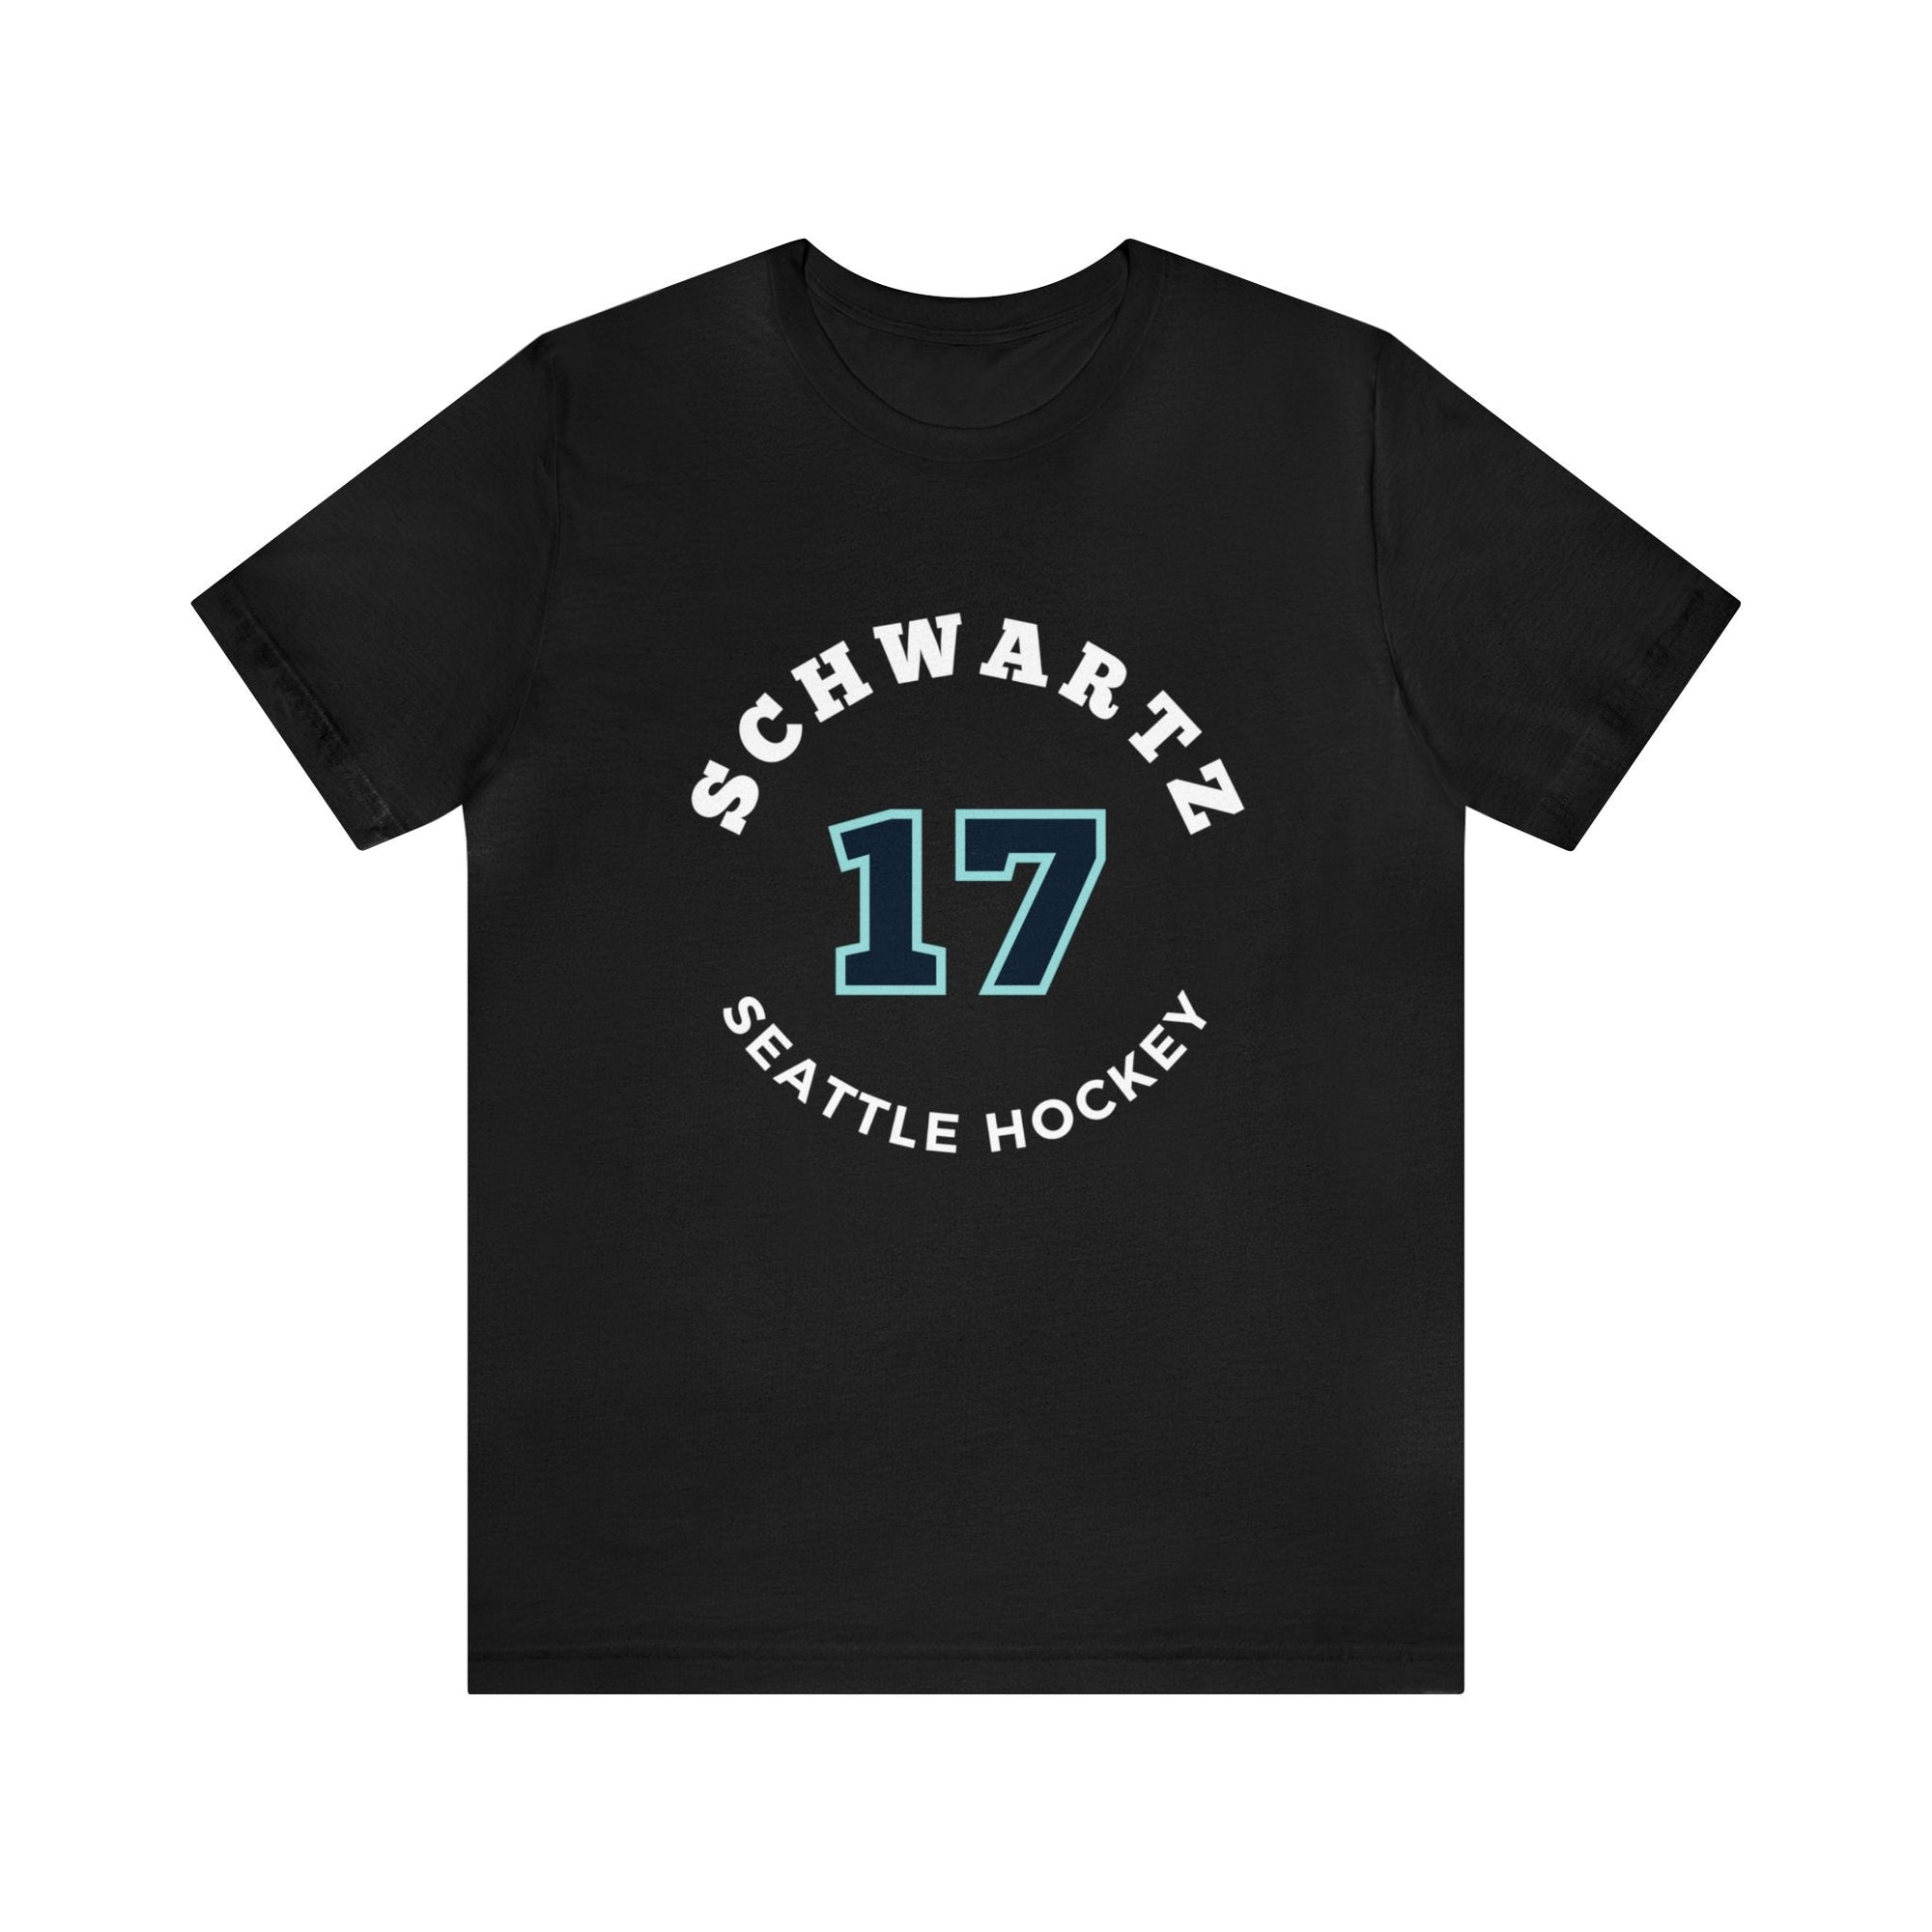 T-Shirt Schwartz 17 Seattle Hockey Number Arch Design Unisex T-Shirt